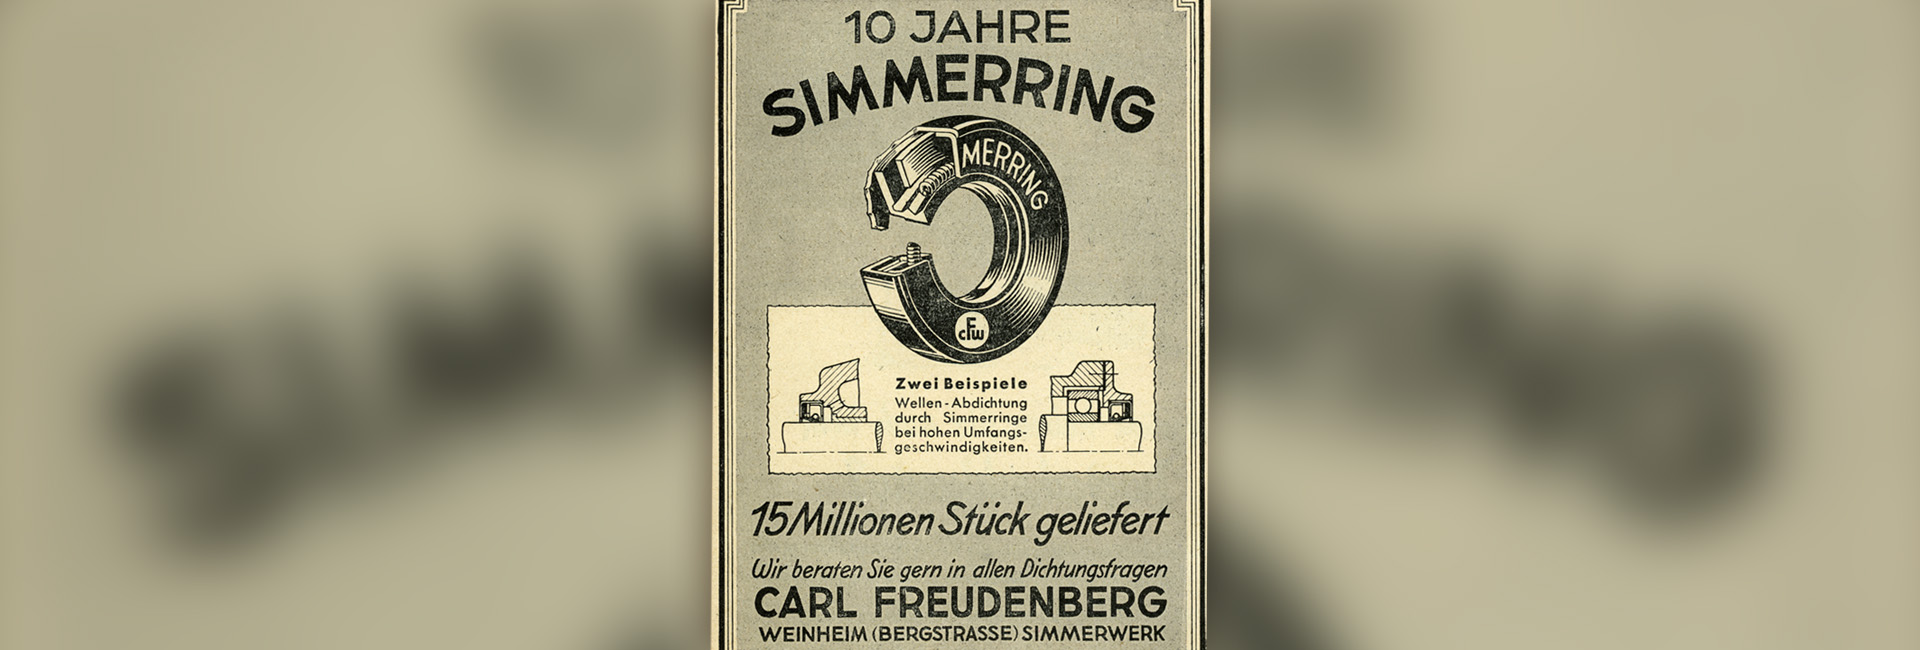 Freudenberg History Example